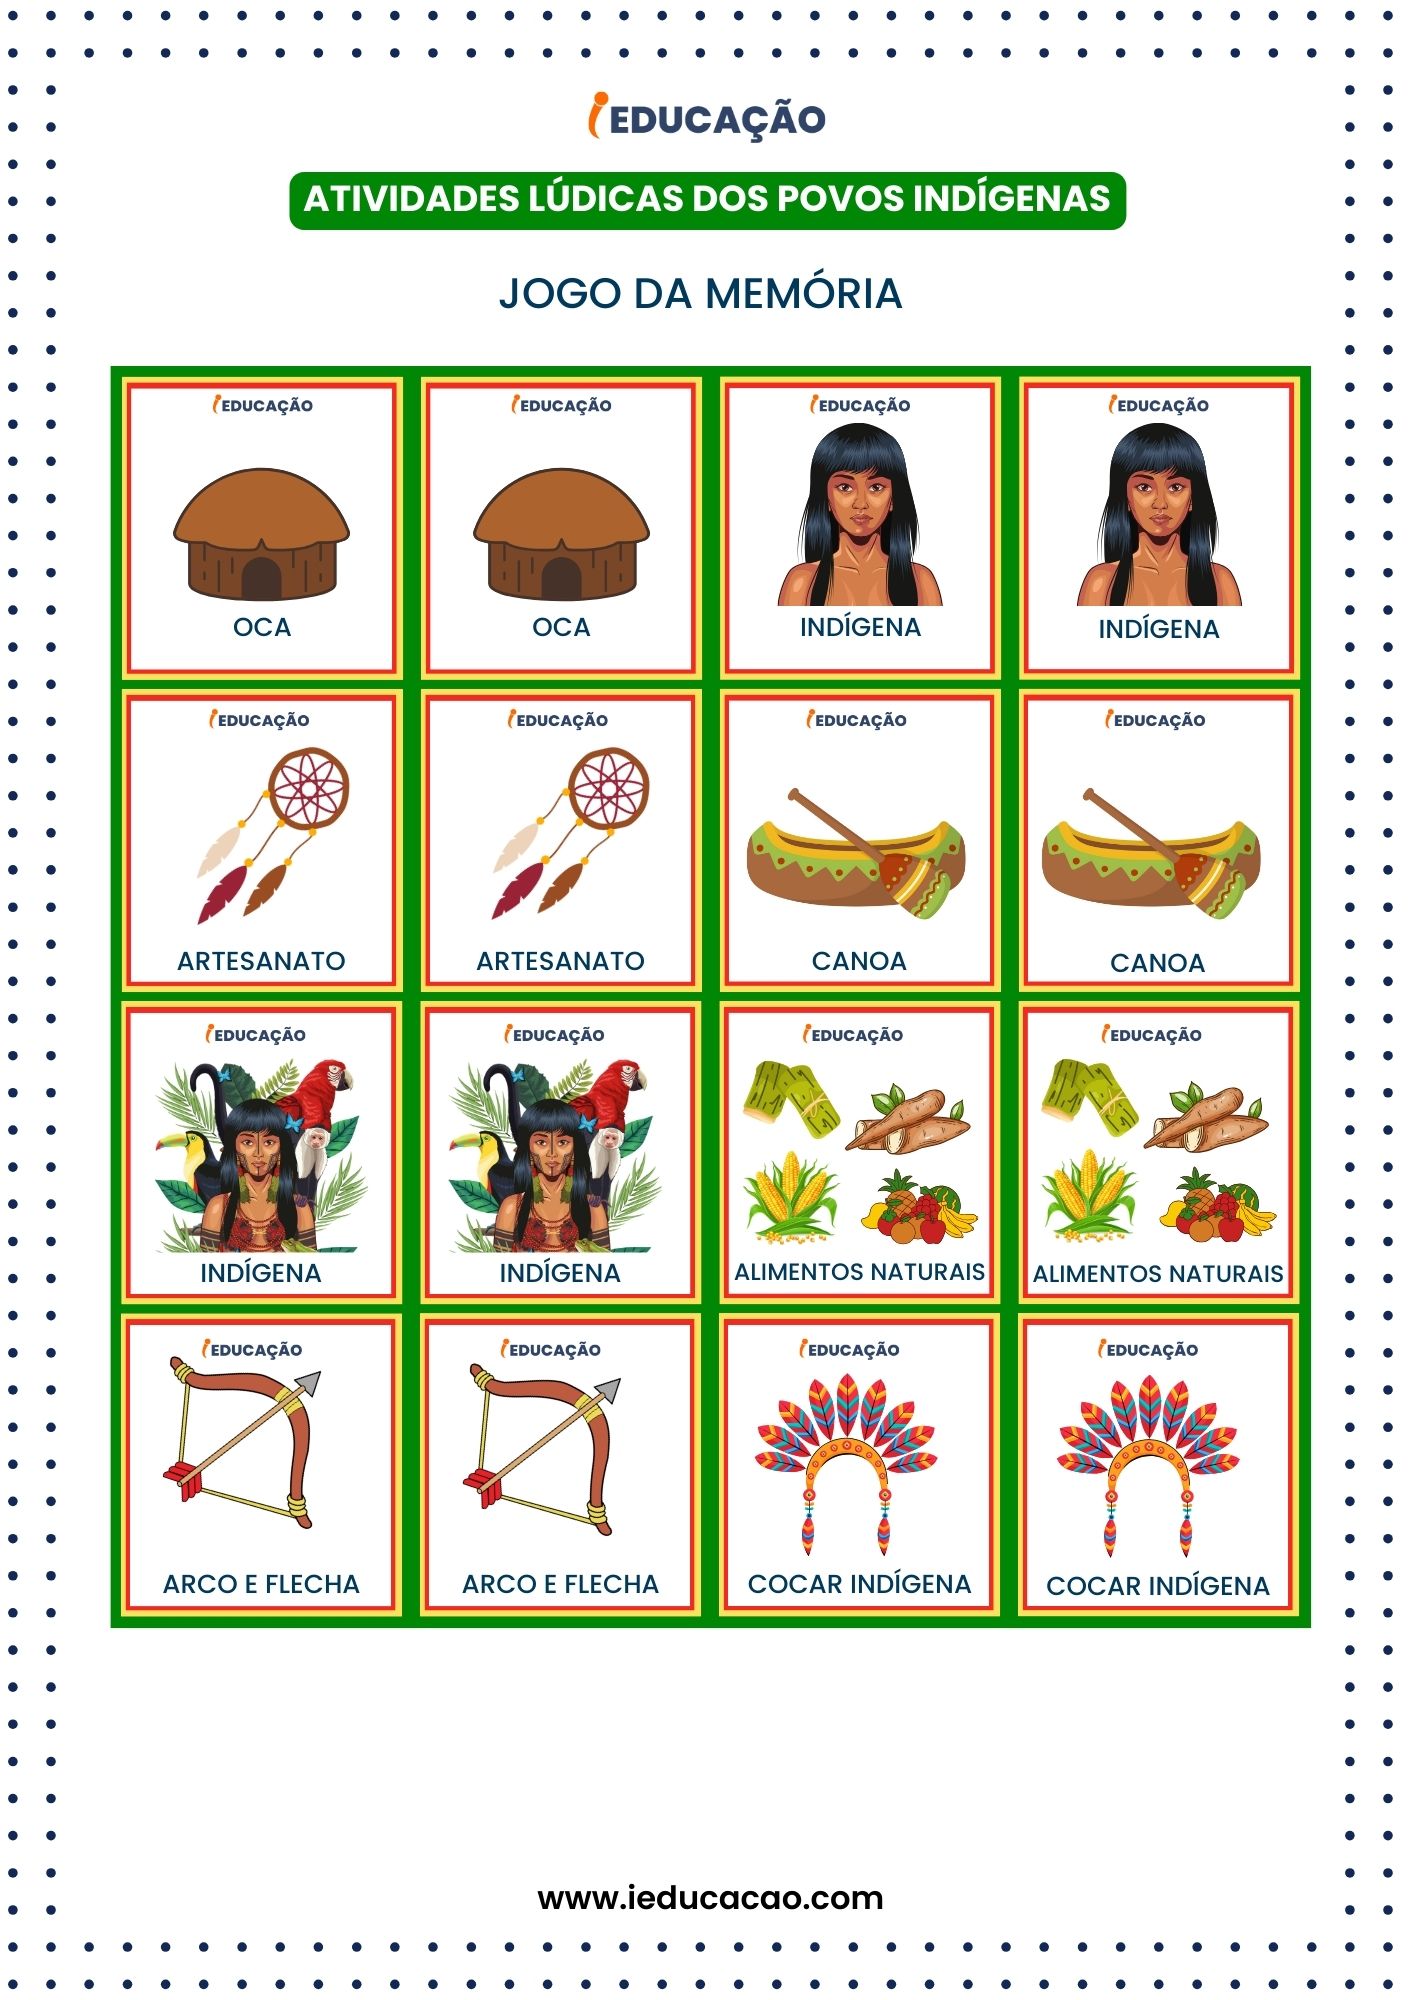 Atividades Lúdicas Dia do Índio - Povos Indígenas do Brasil - Jogo pedagógico - Jogo da Memória infantil.jpg